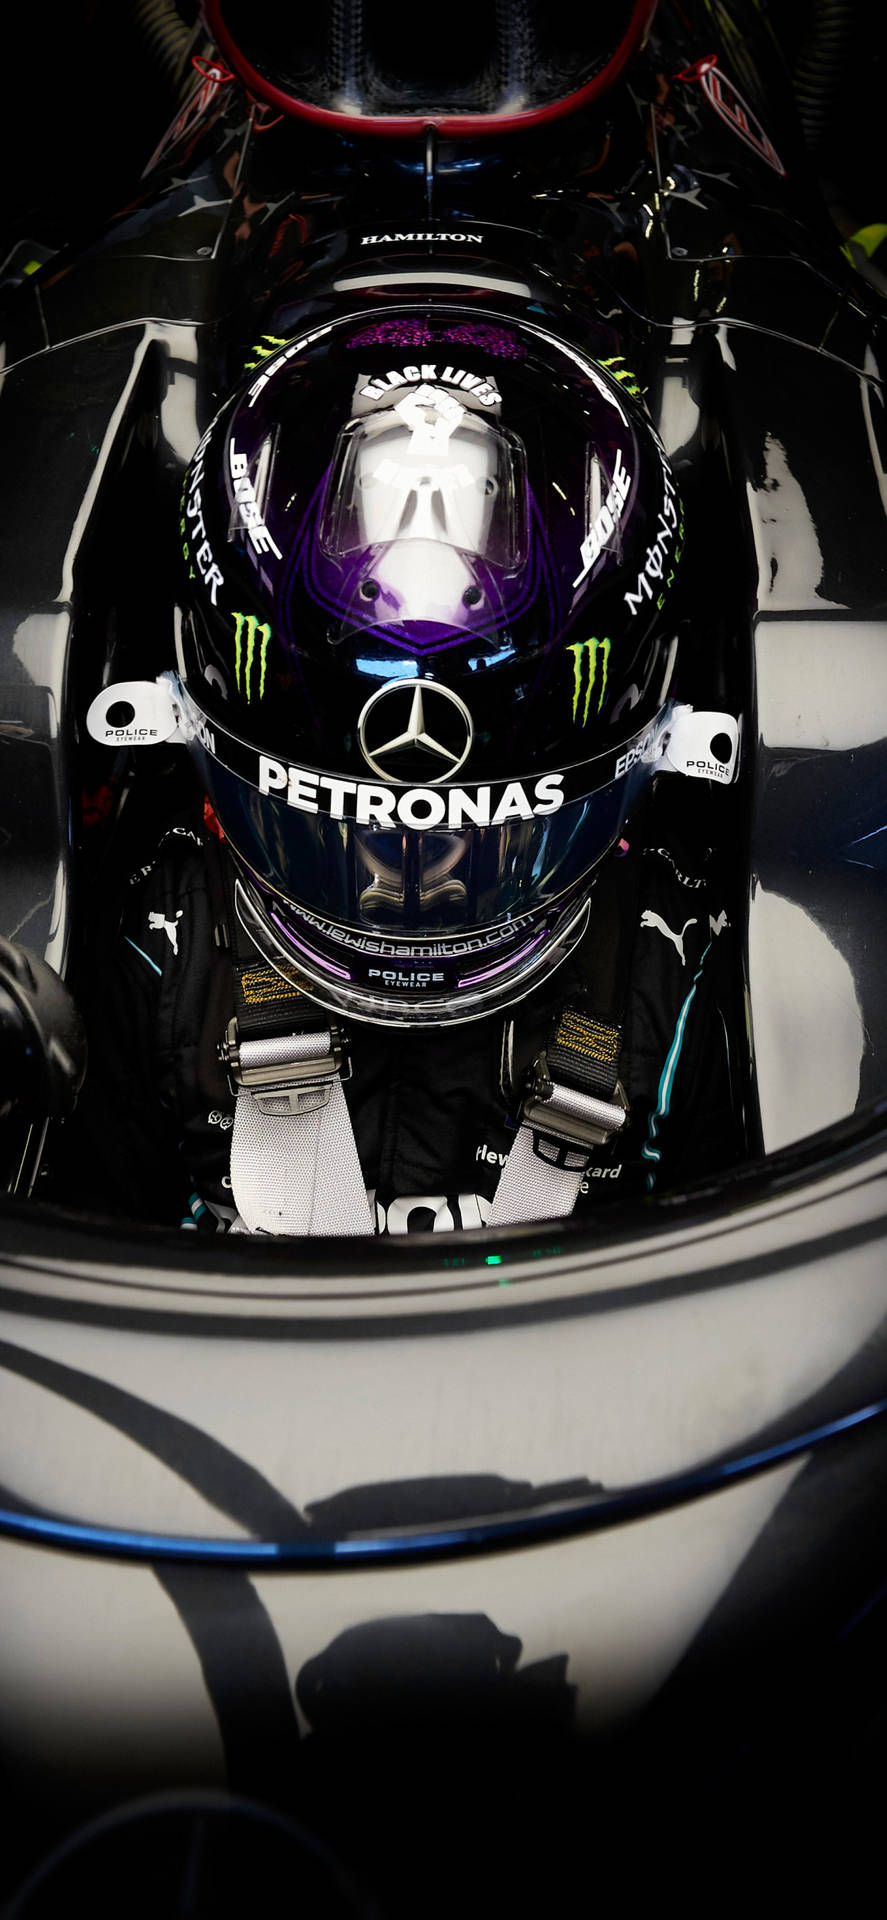 Stigning din hastighed med Mercedes F1 og iPhone! Wallpaper